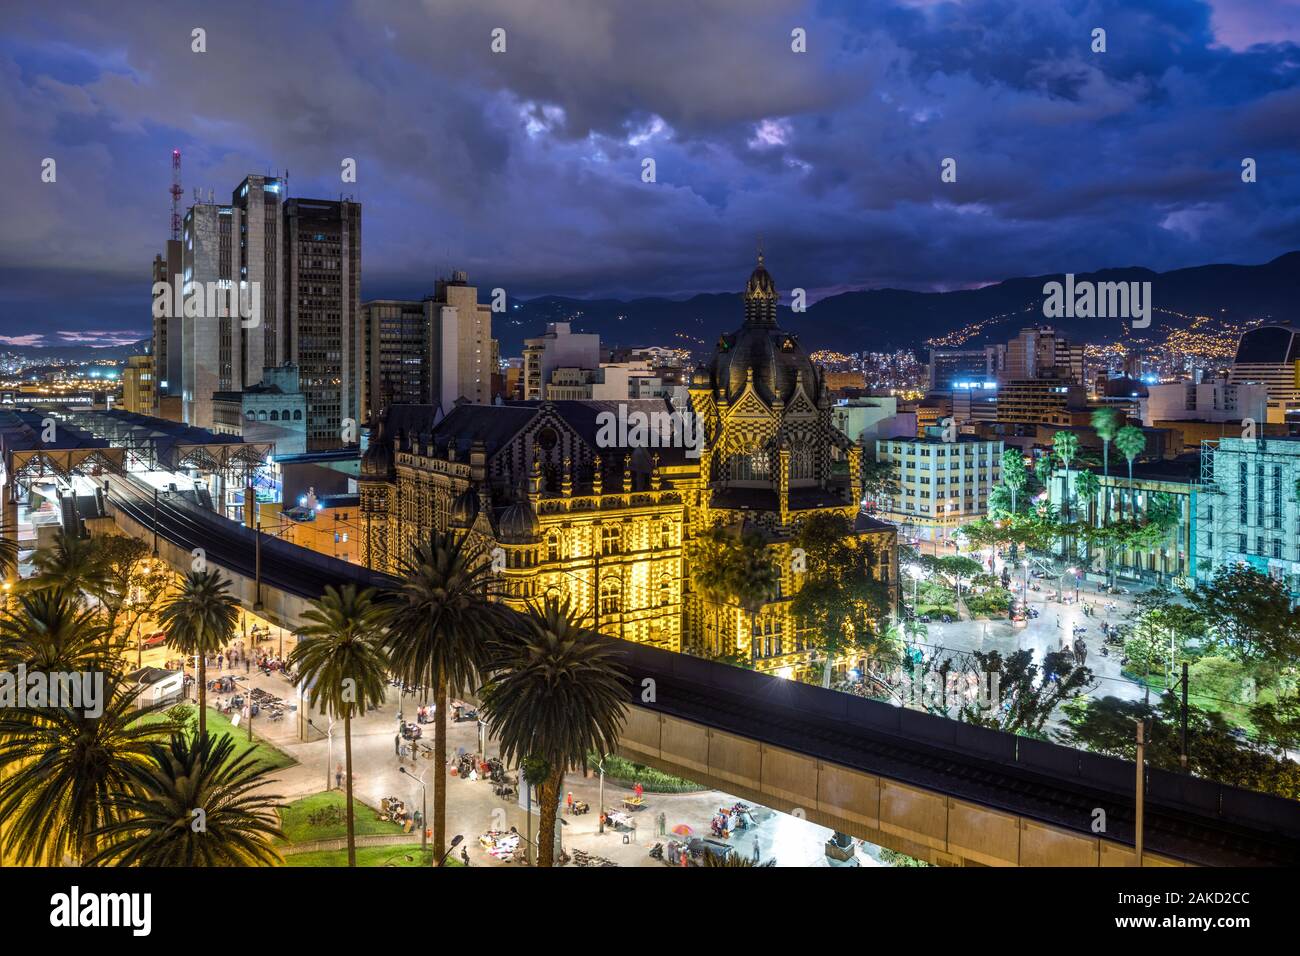 La place Botero Plaza au crépuscule à Medellin, Colombie. Banque D'Images